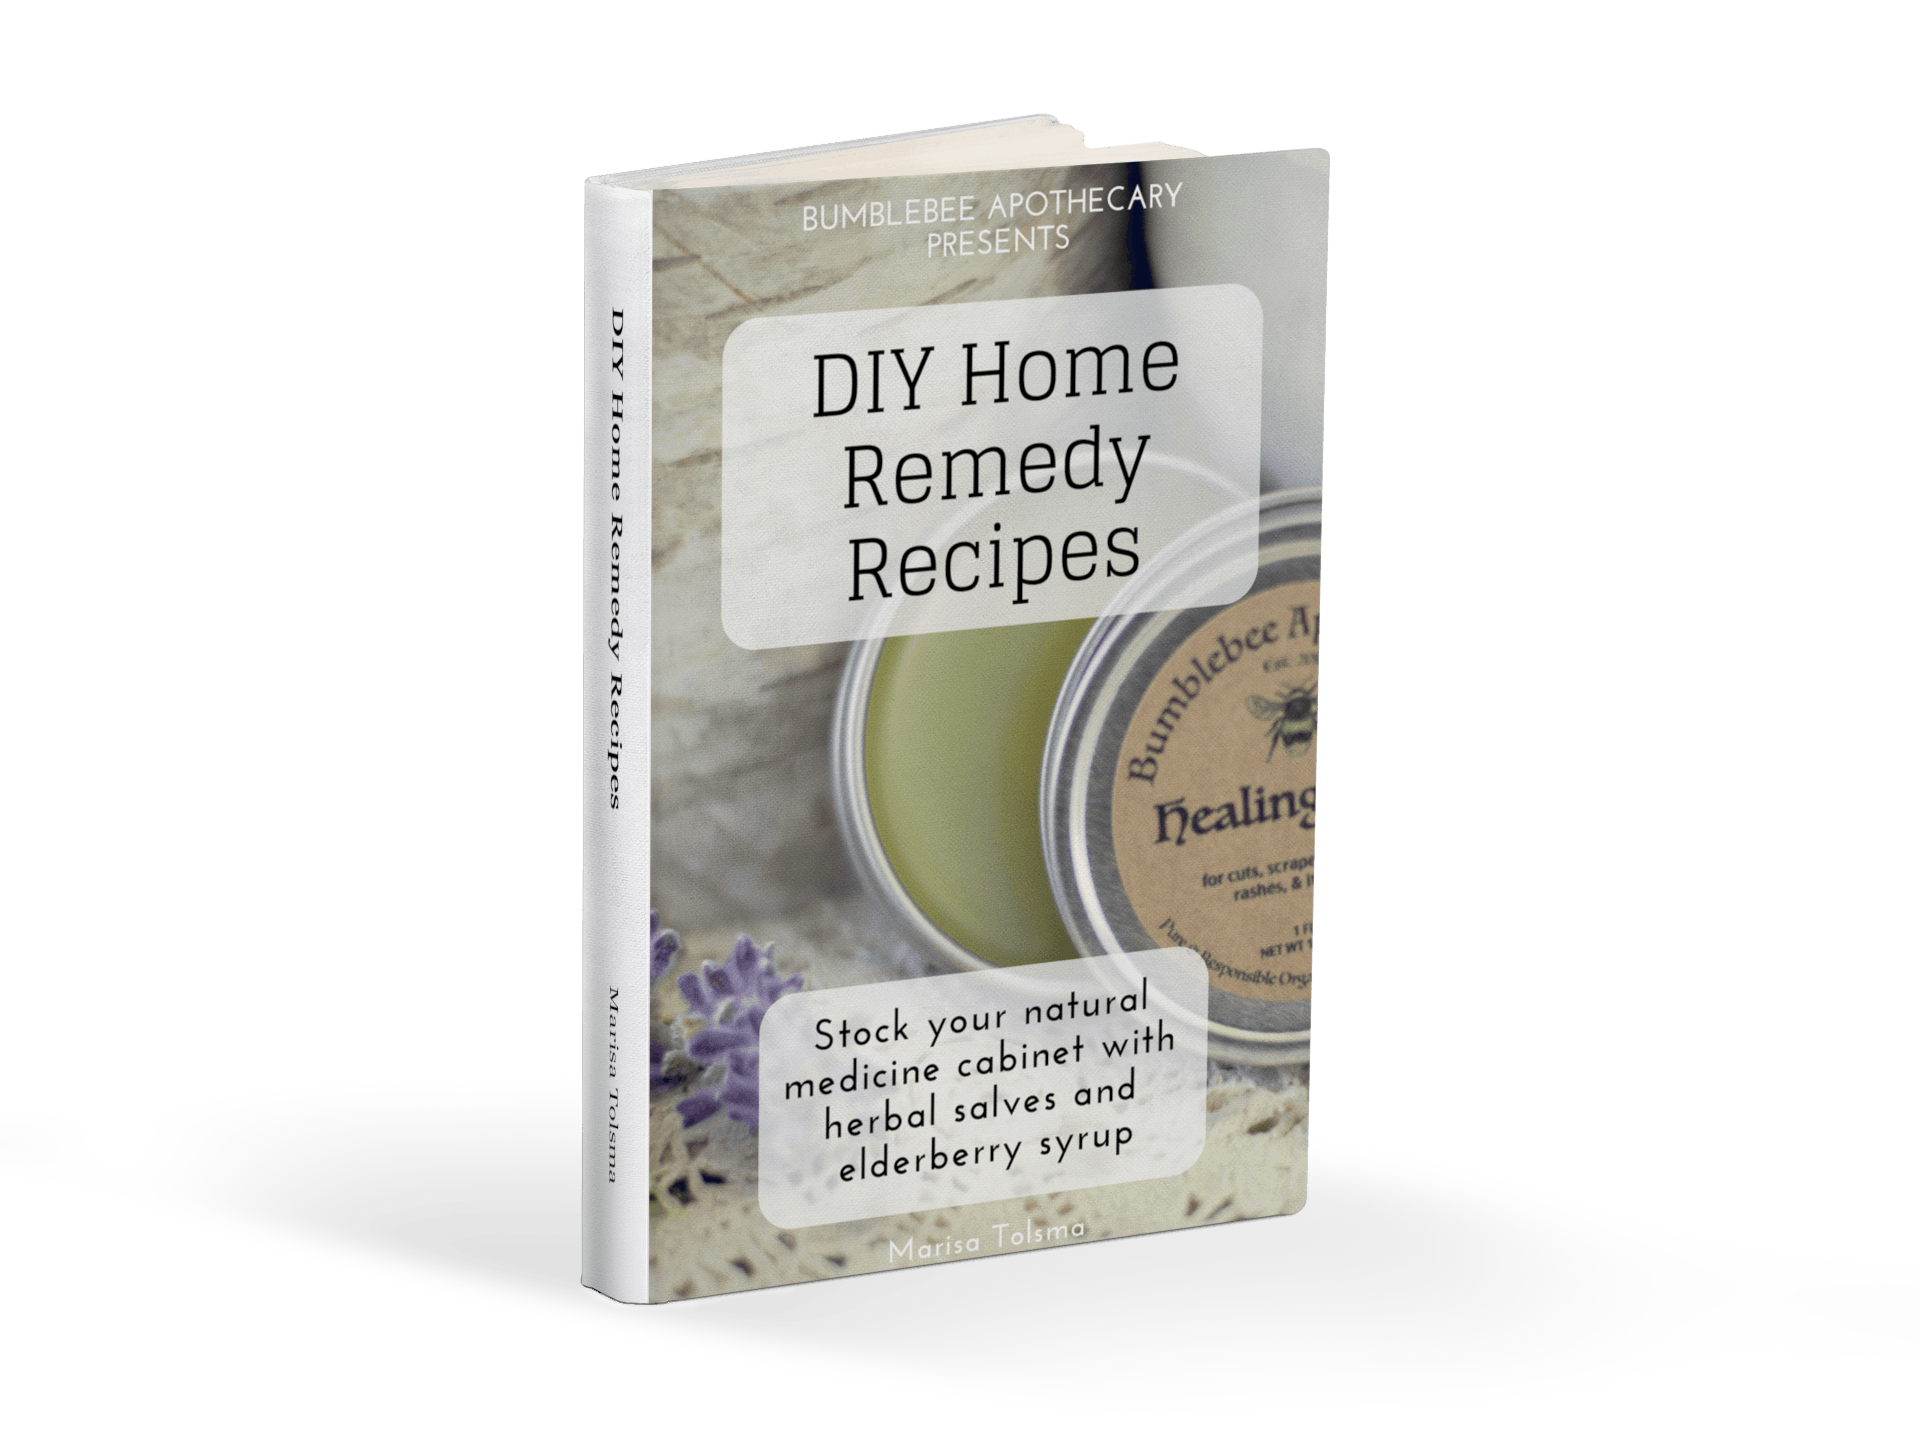 FREE DIY Home Remedy Recipes Ebook